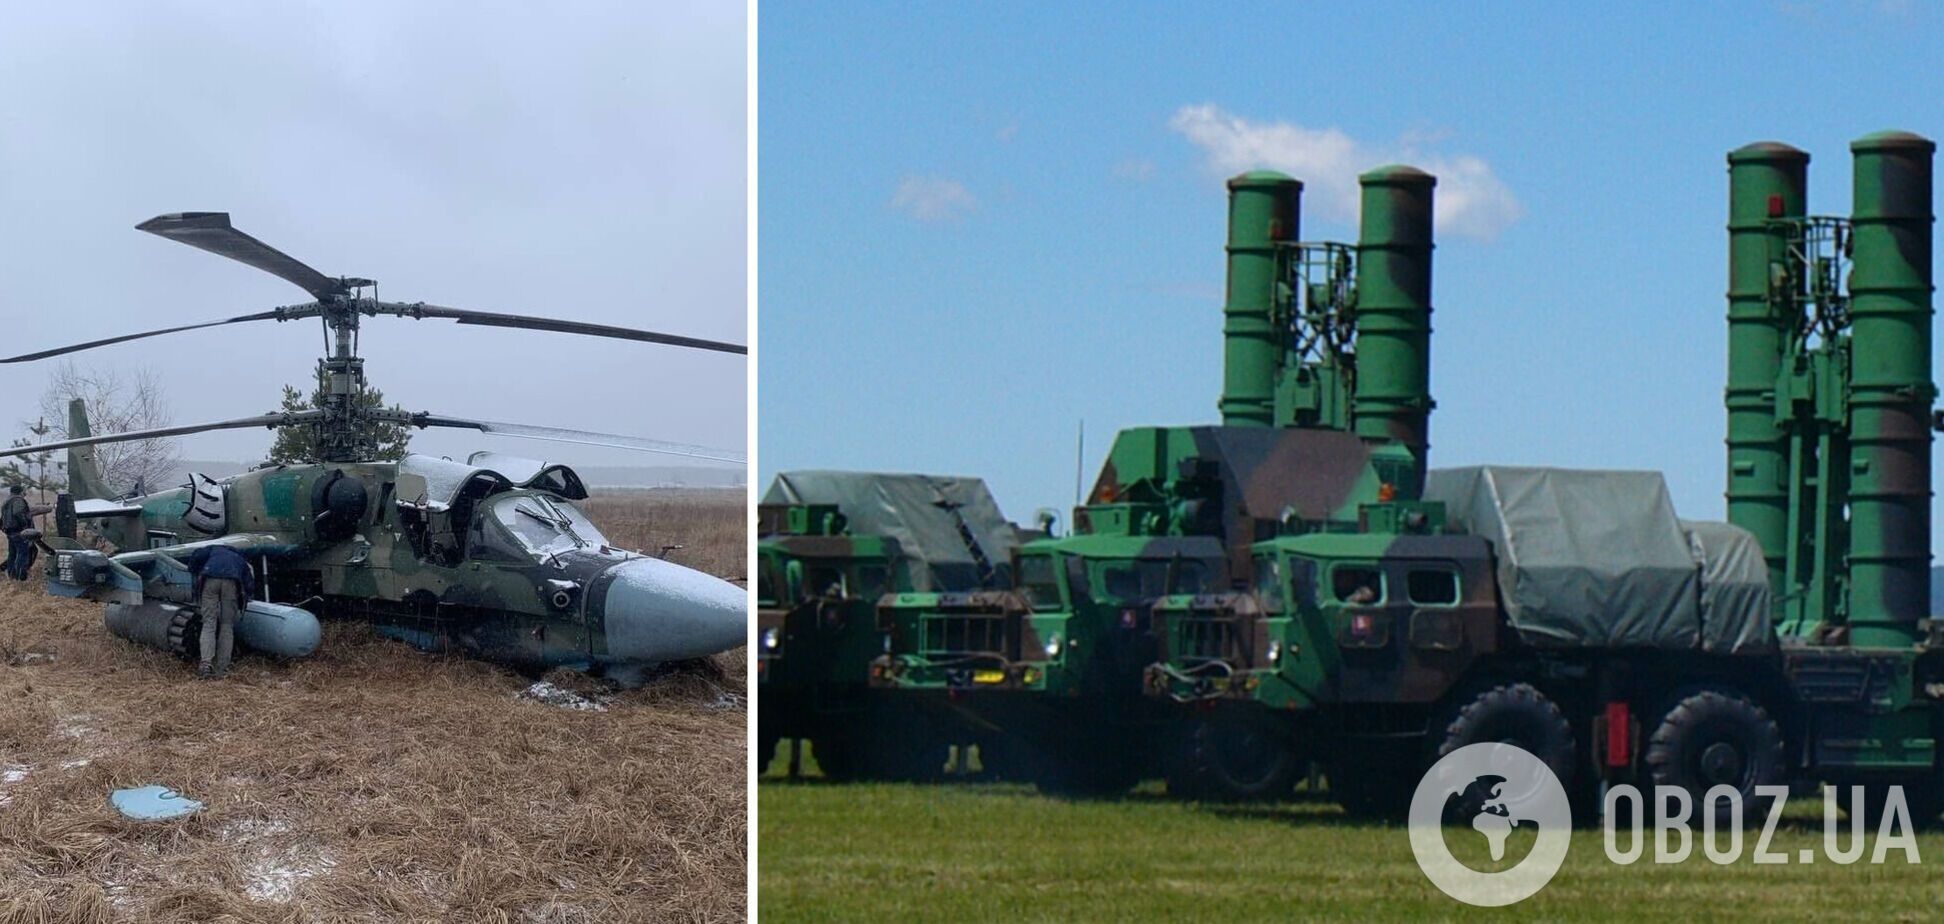 Повітряні сили ЗСУ отримали ЗРК С-300 від країн-партнерів НАТО та збили гелікоптер окупантів